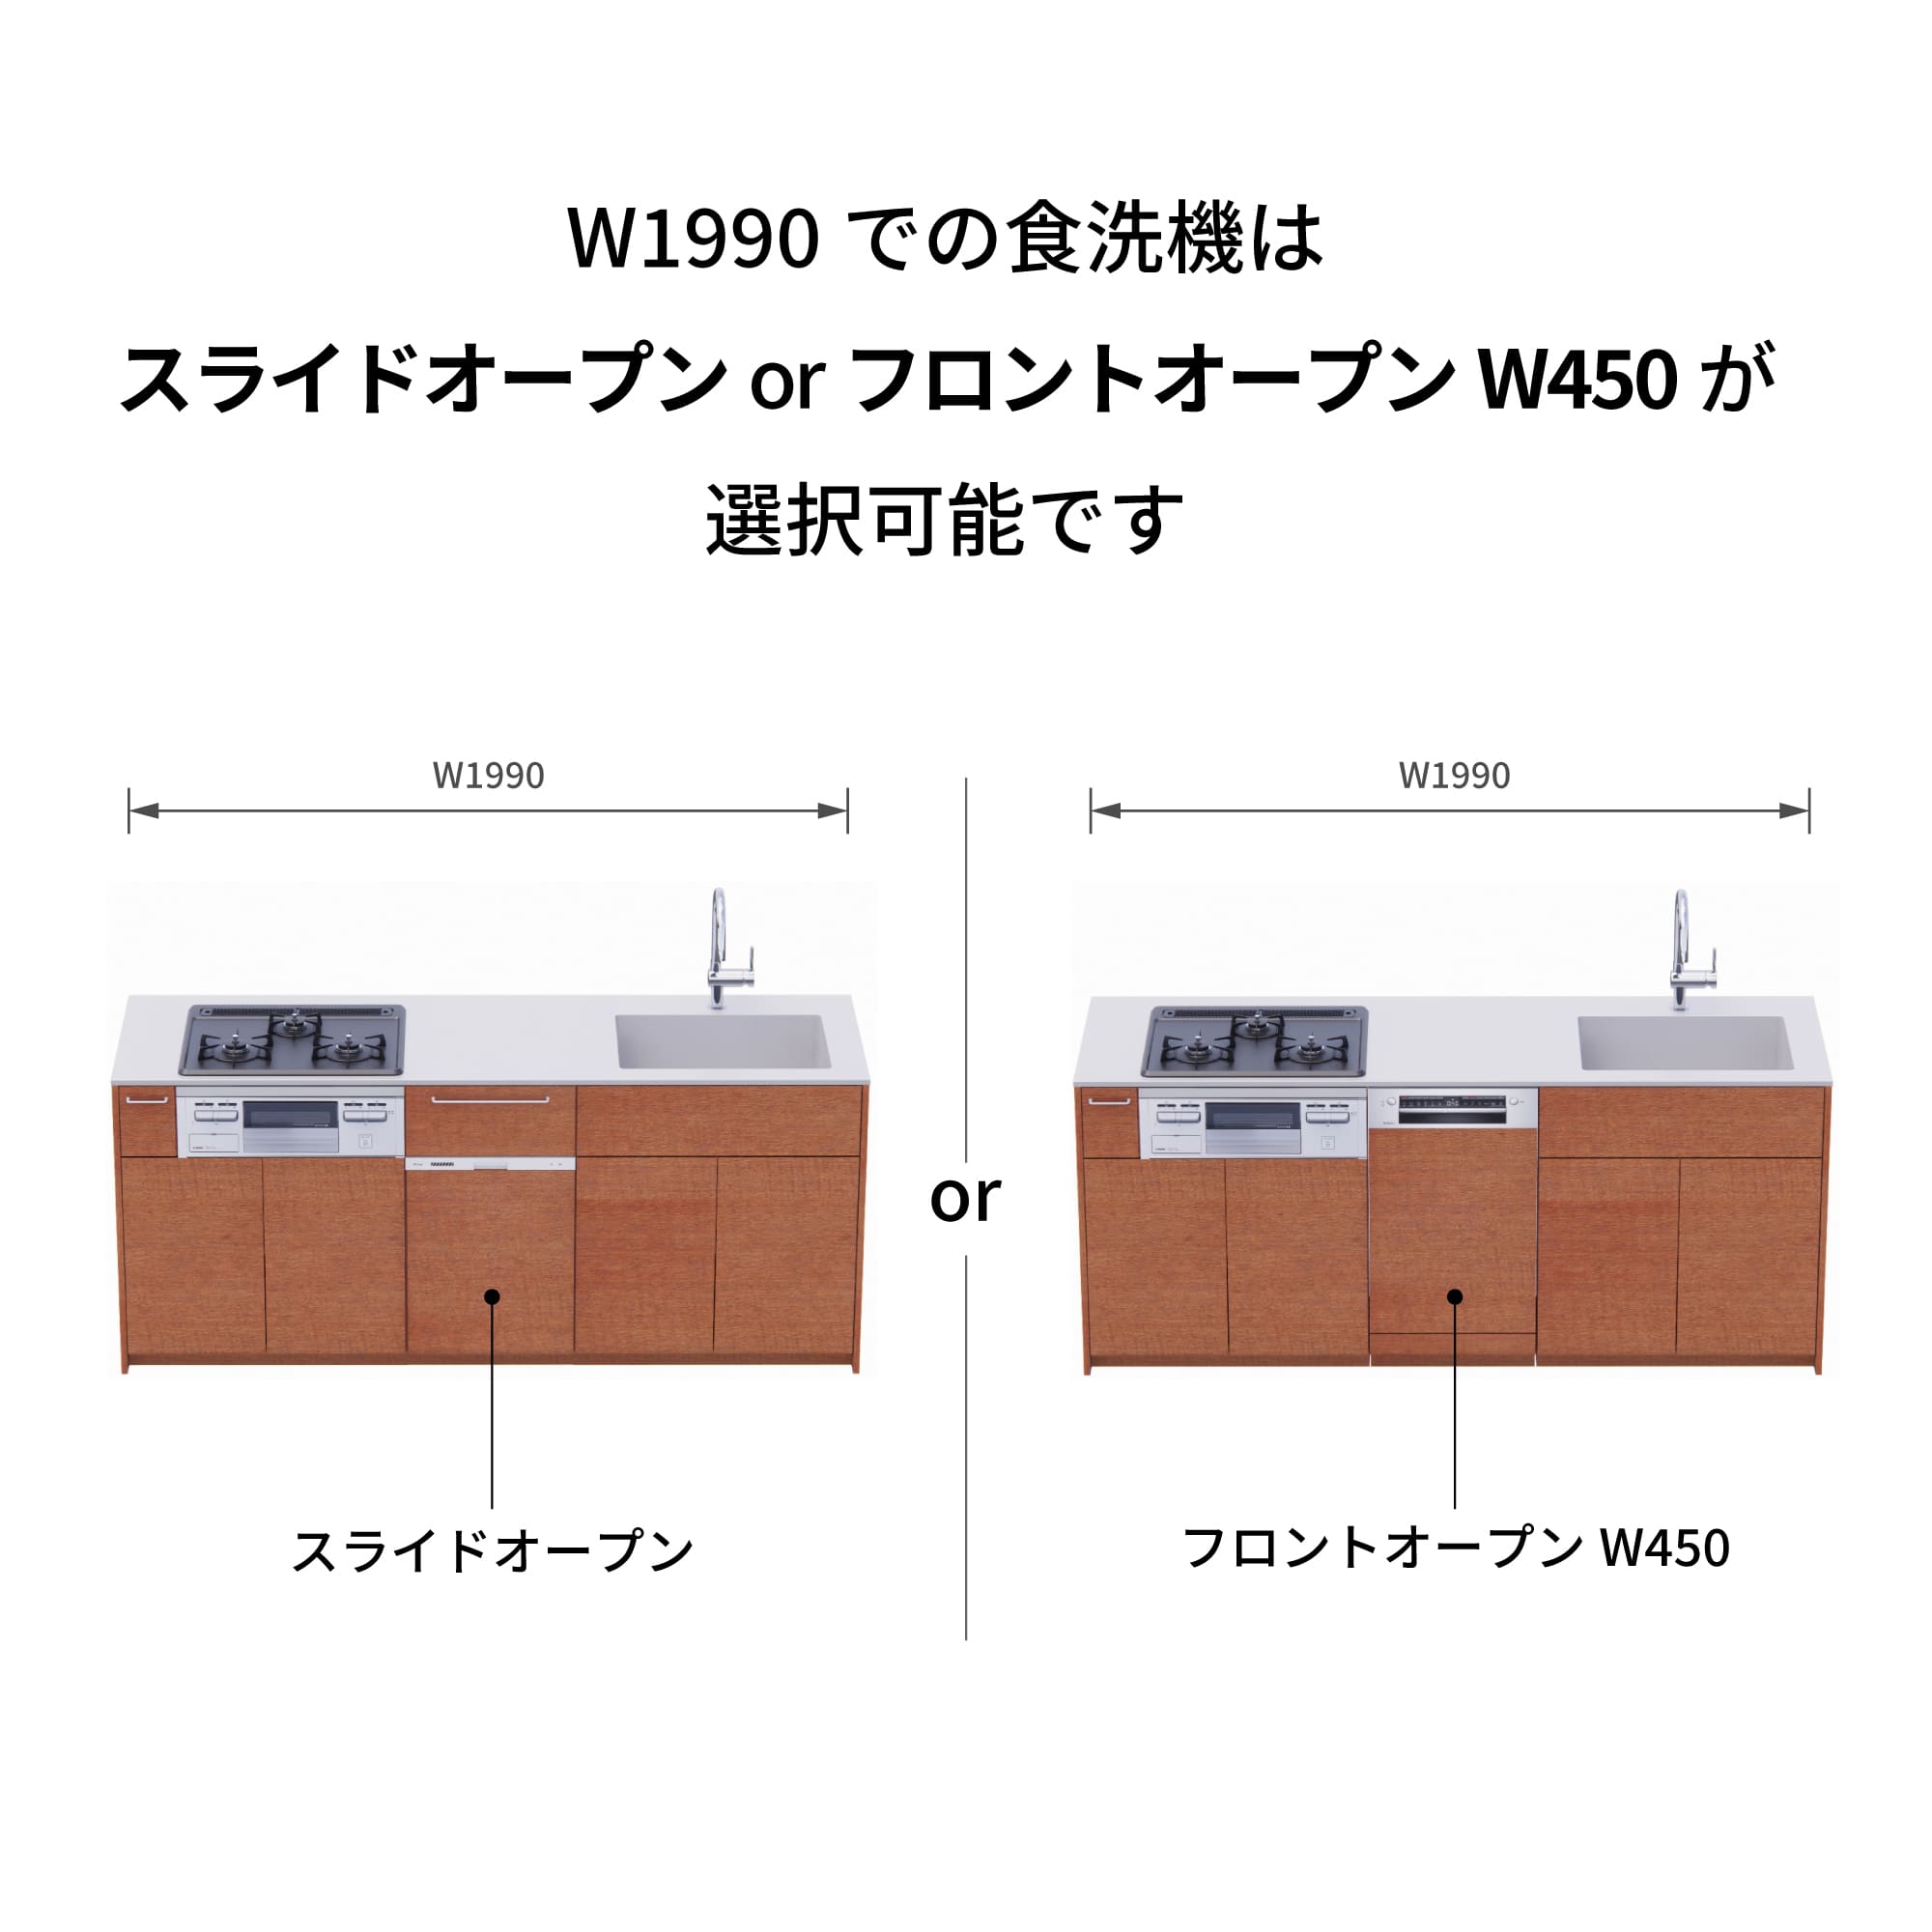 木製システムキッチン 対面型 W1990・コンロあり / オーブンなし / 食洗機あり KB-KC022-33-G183 W1990はスライドオープンとフロントオープン450が選択可能です